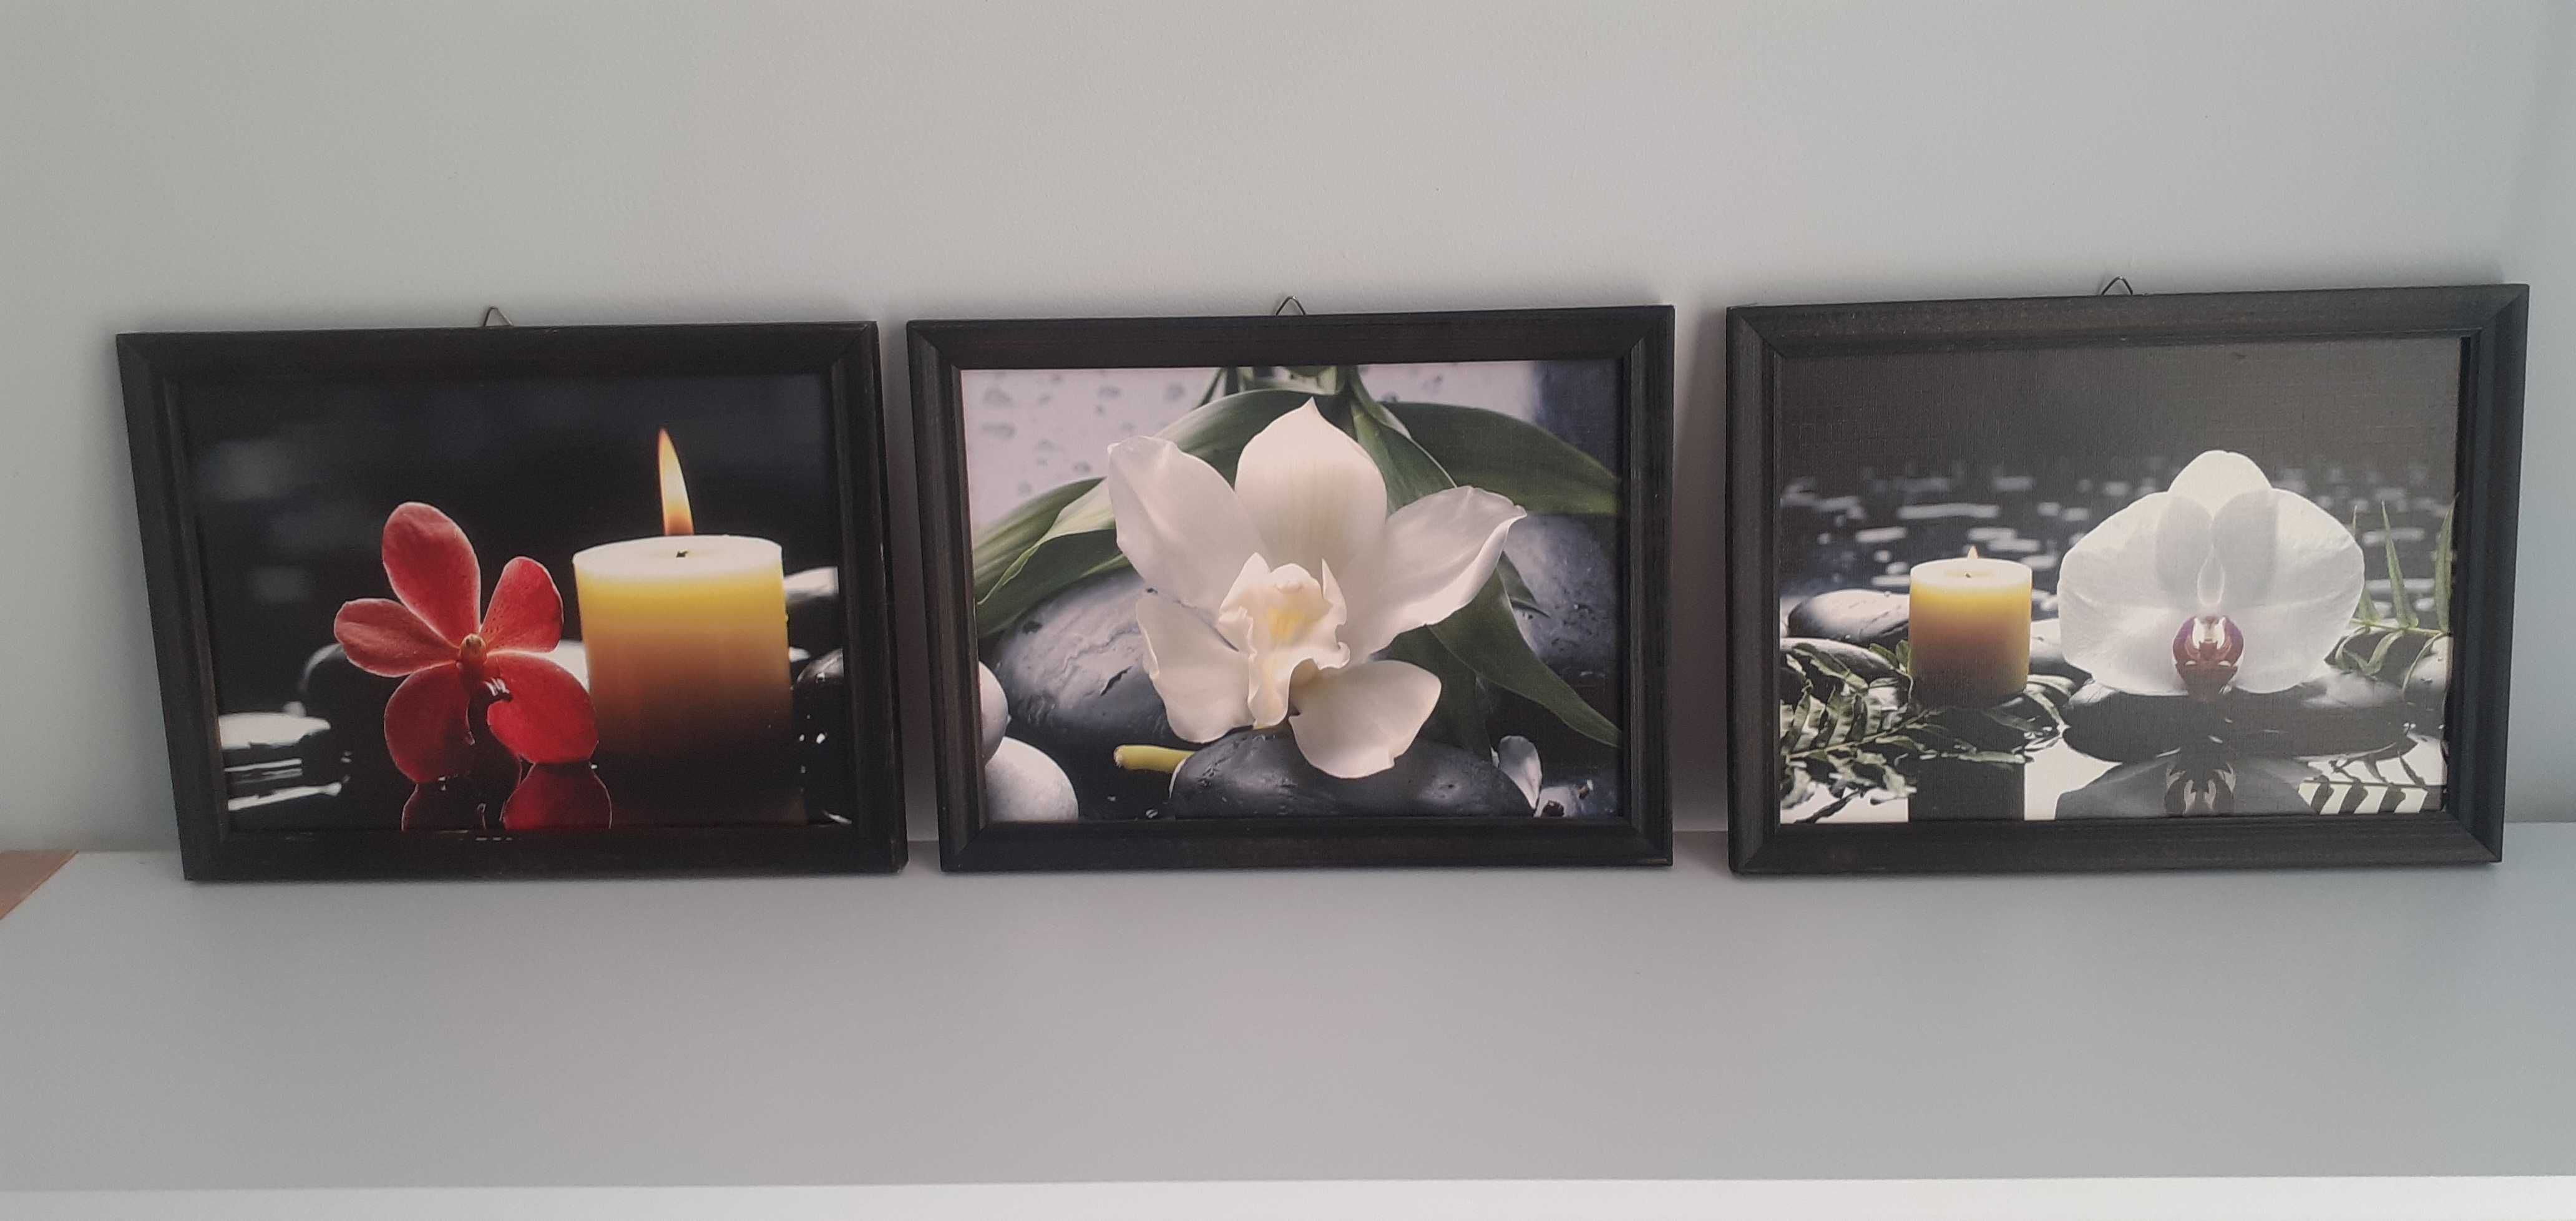 Obrazki, komplet 3 szt. Obrazków z kwiatami i świecami